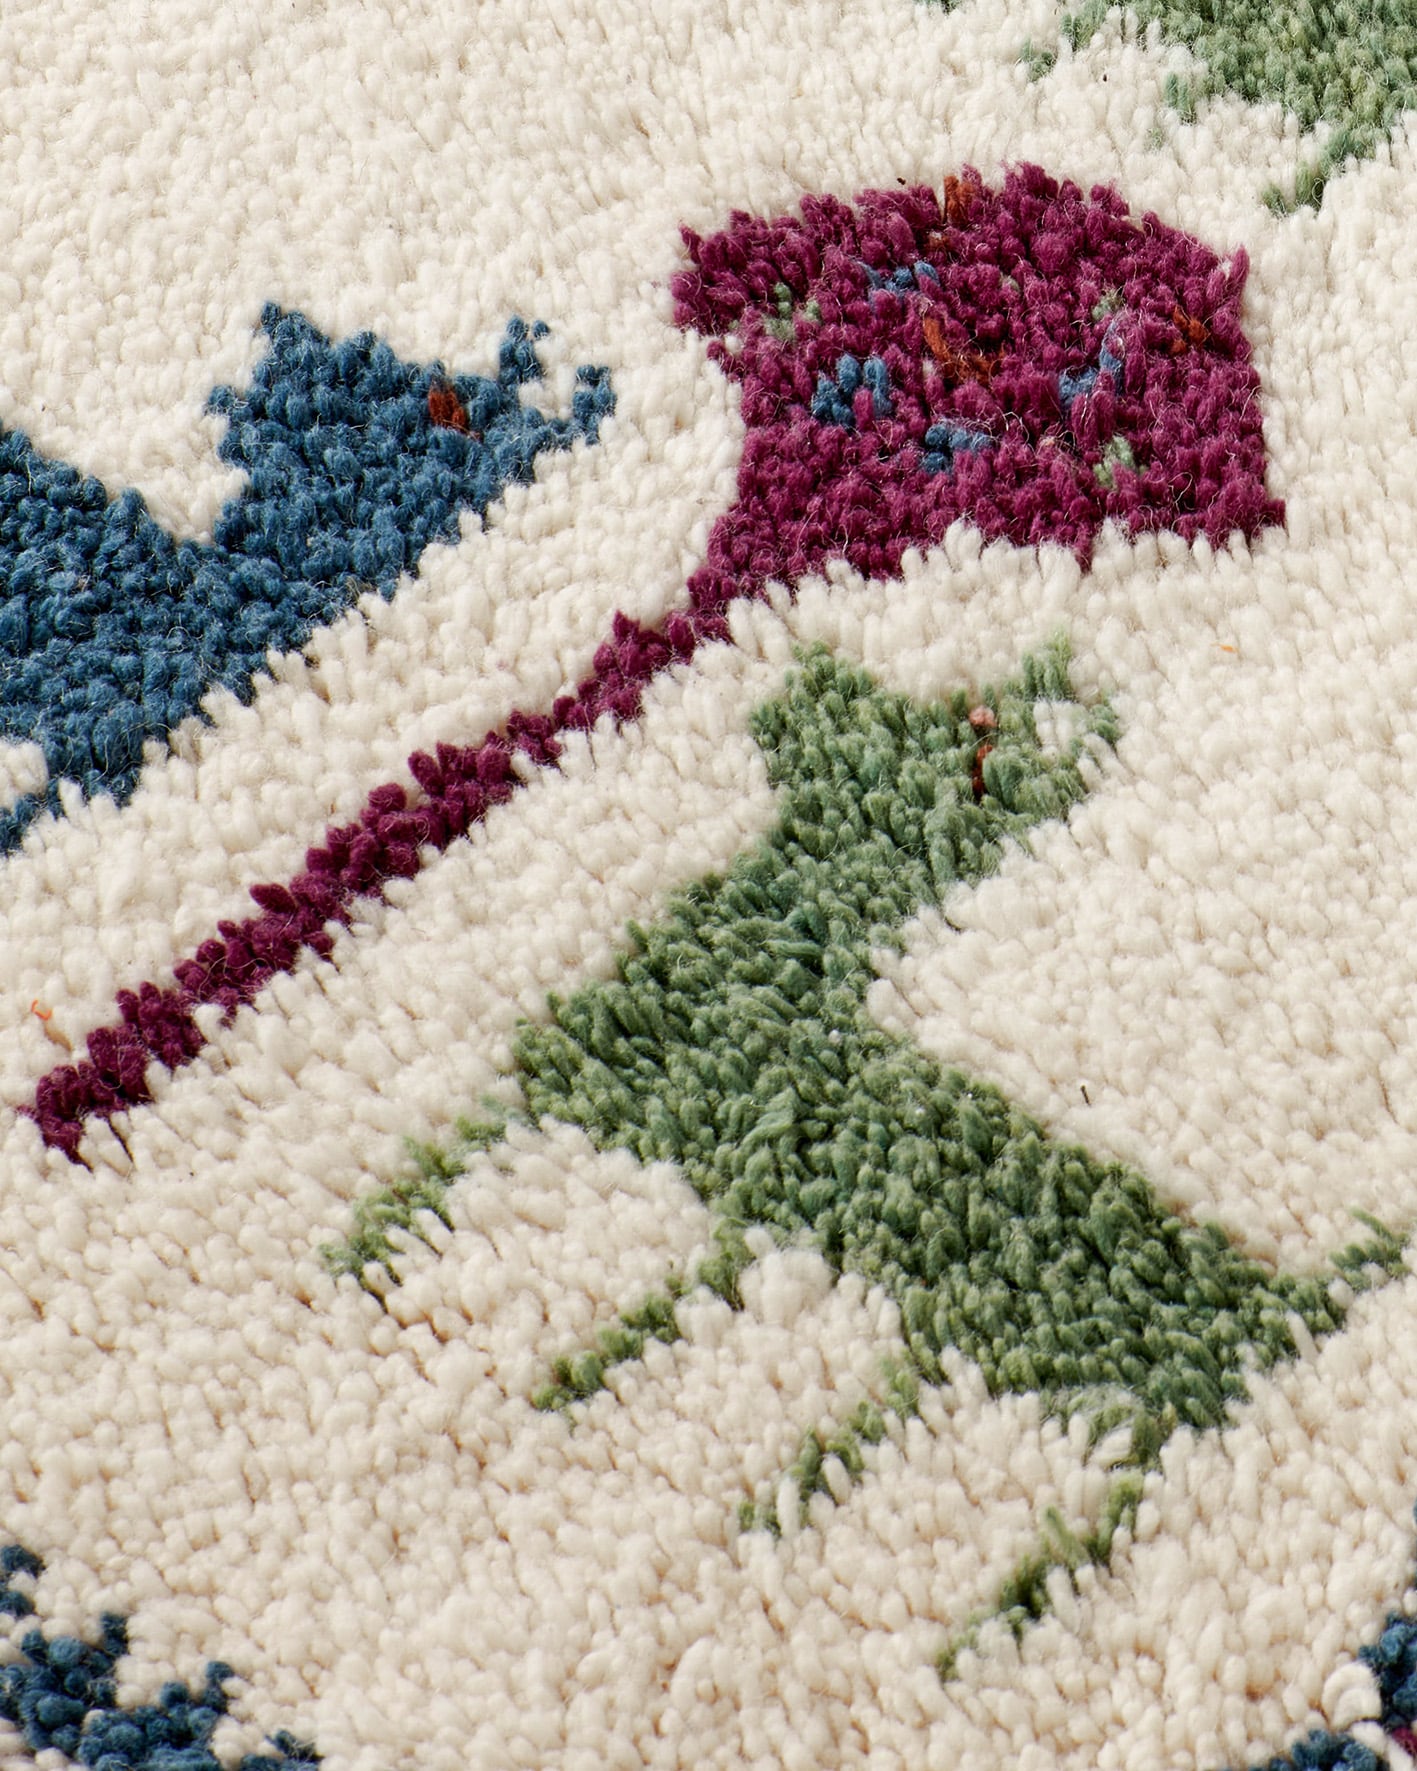 Mini állatos szőnyeg kék-zöld-lila színekkel, textúra